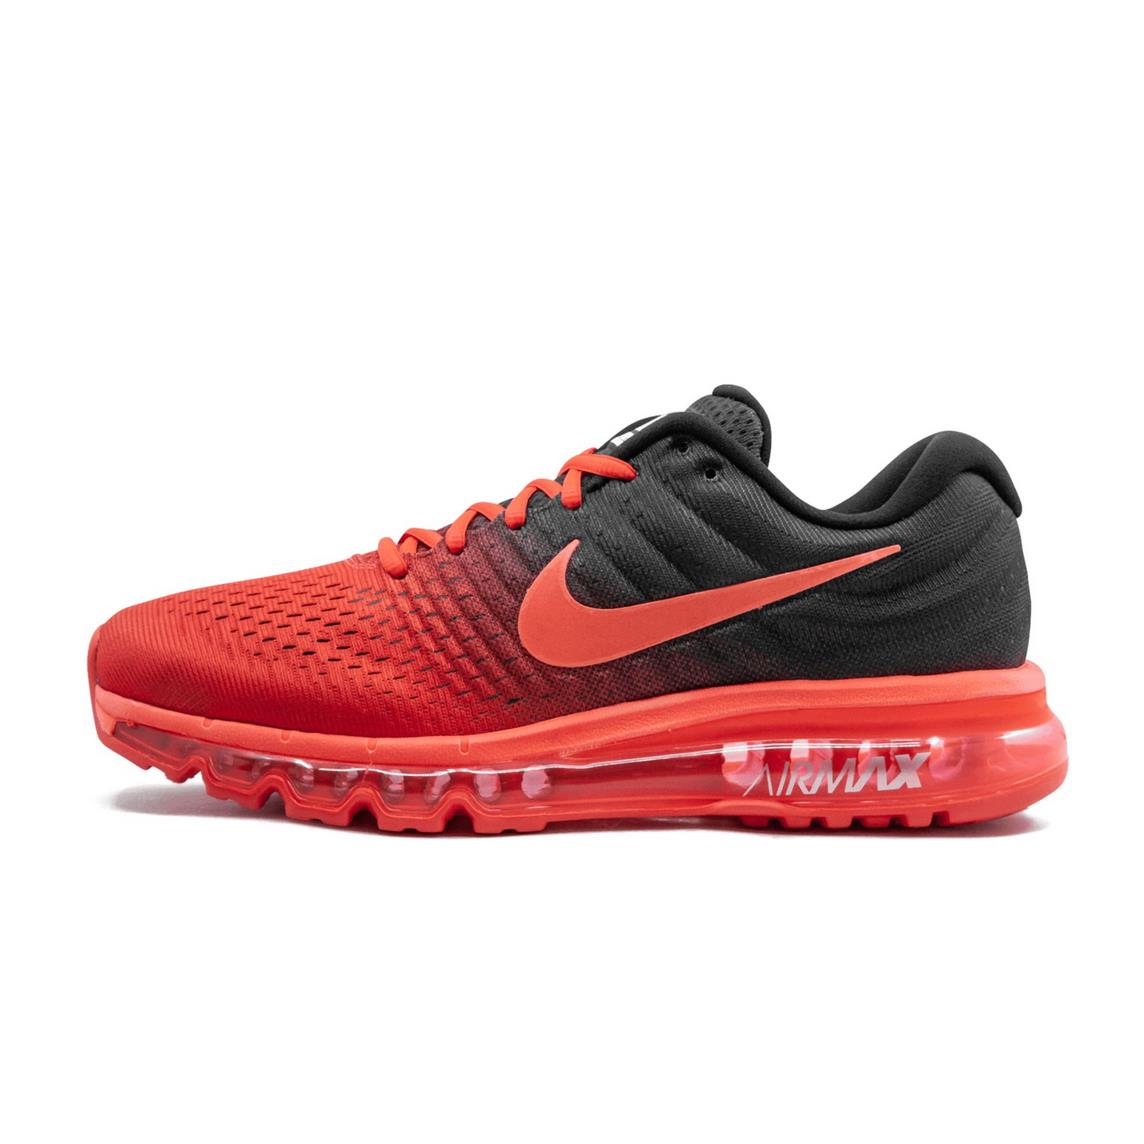 Nike Mens Air Max 2017 Running Shoes Box NO Lid 849559 600